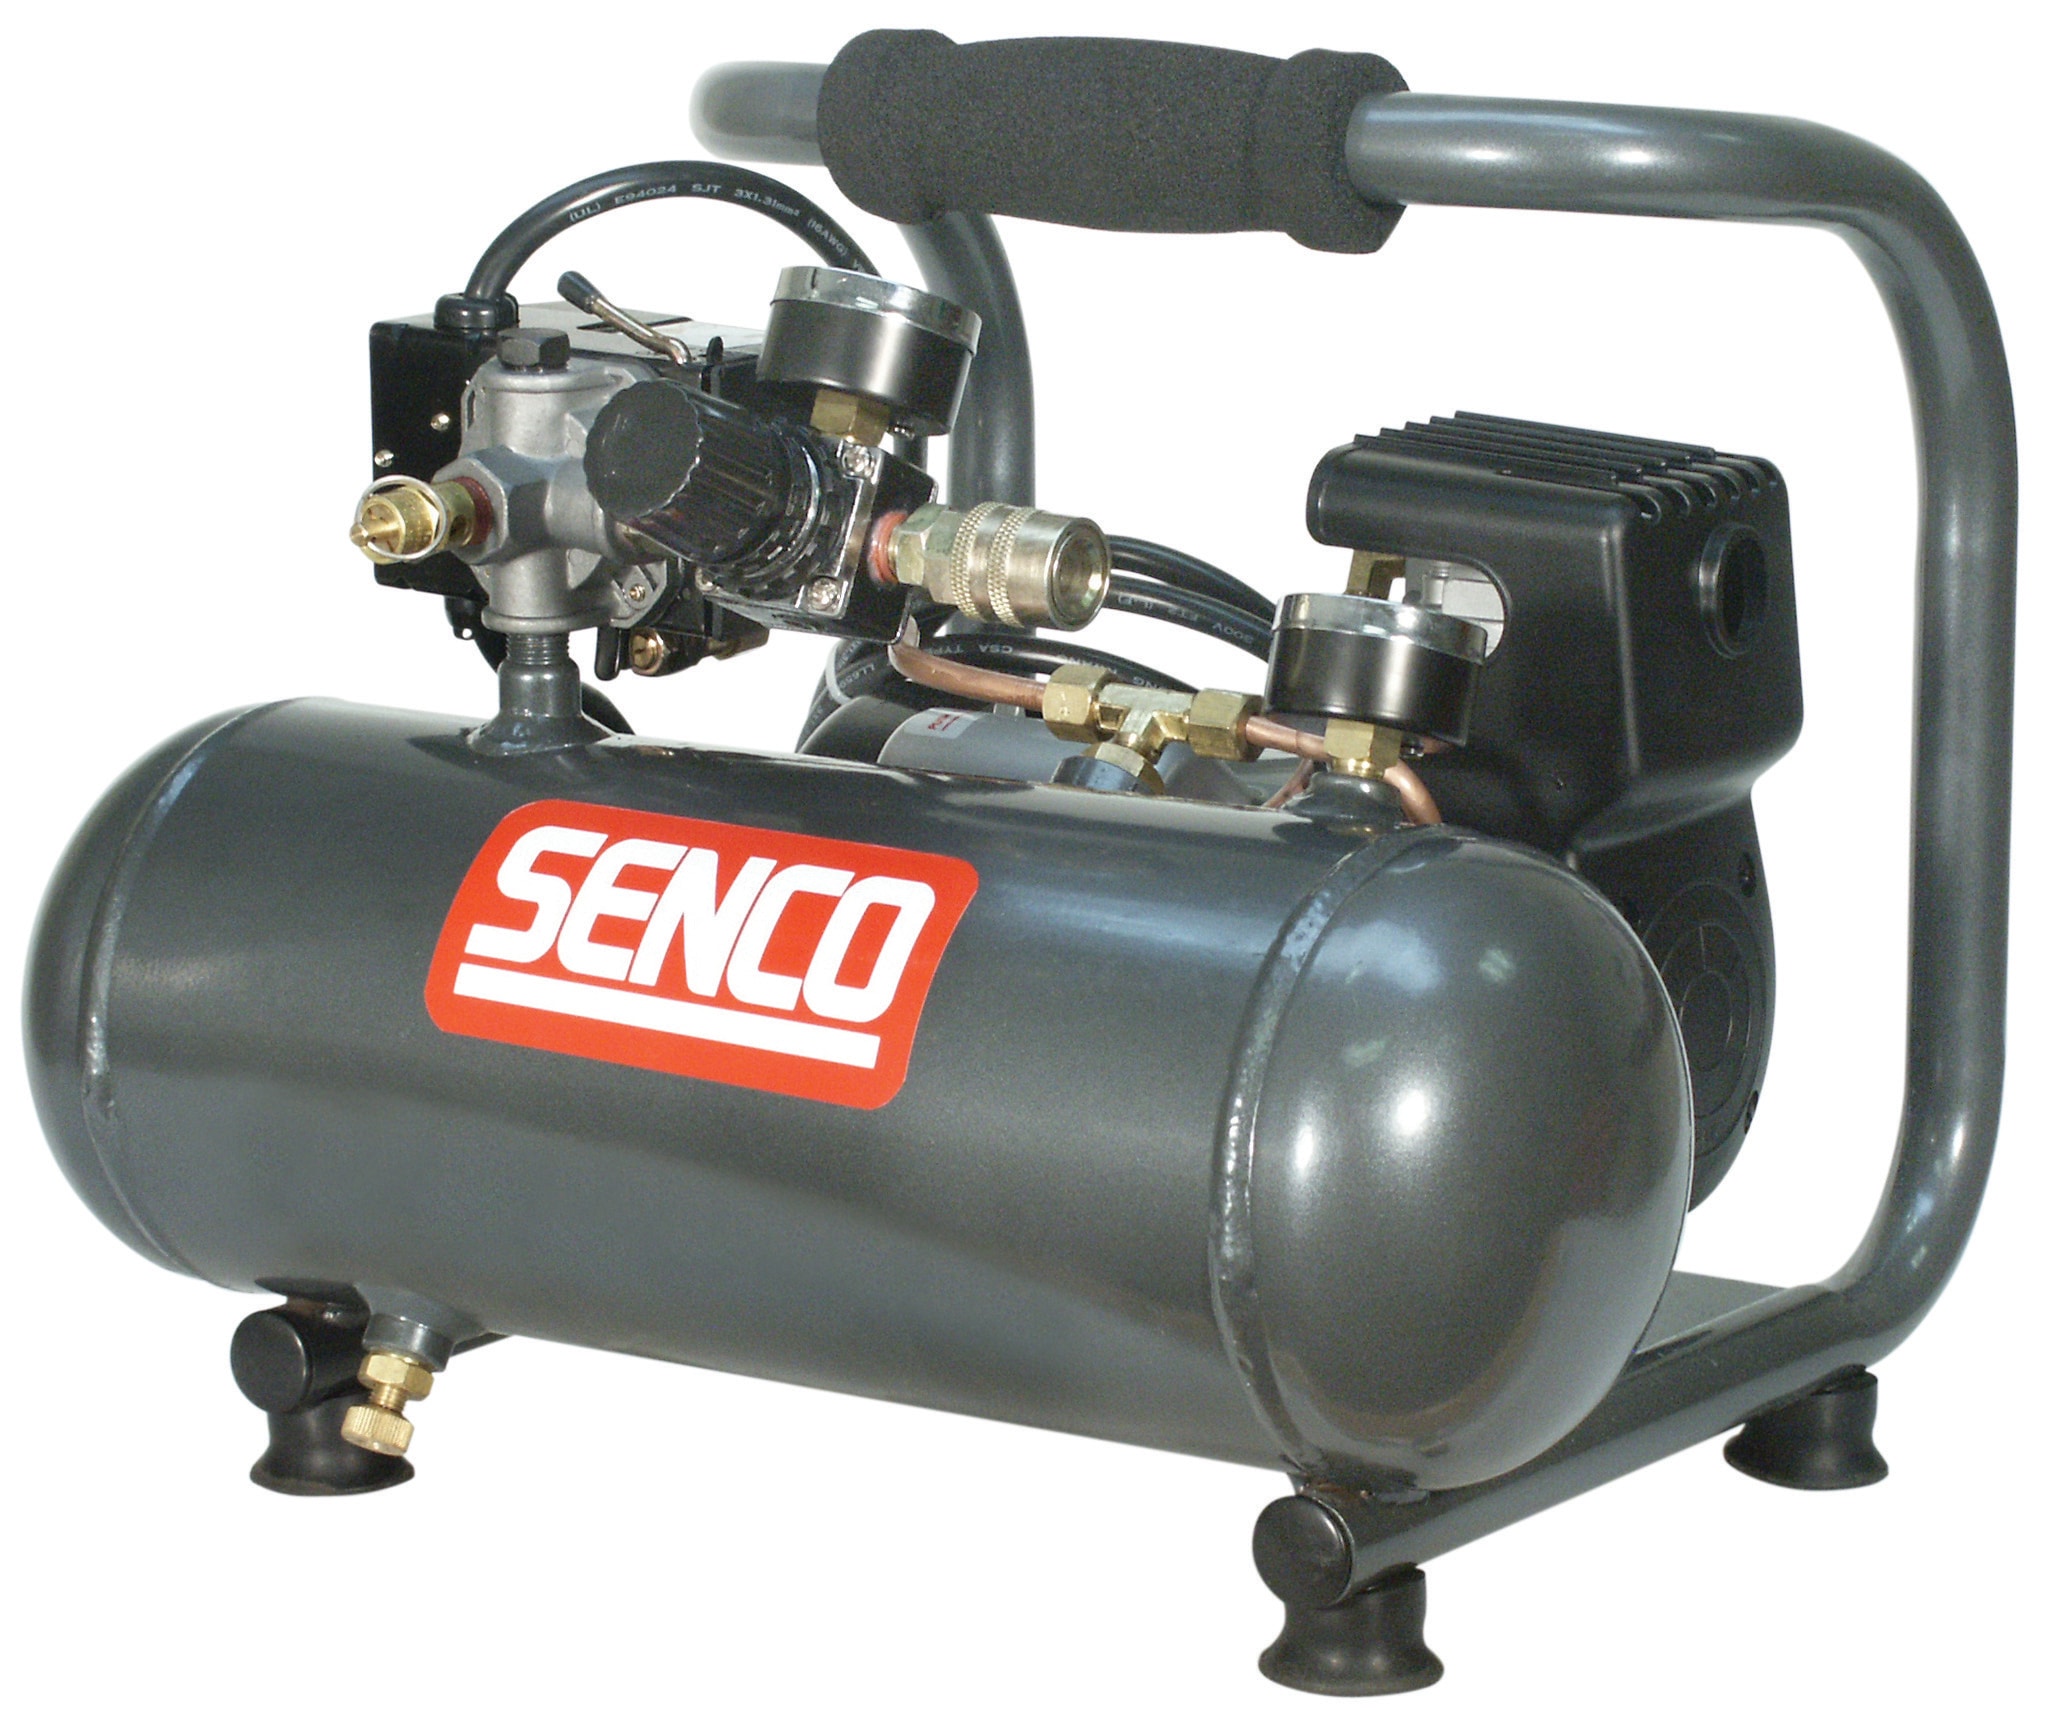 SENCO PC1010 Gallon Finish and Trim Air Compressor for sale online 